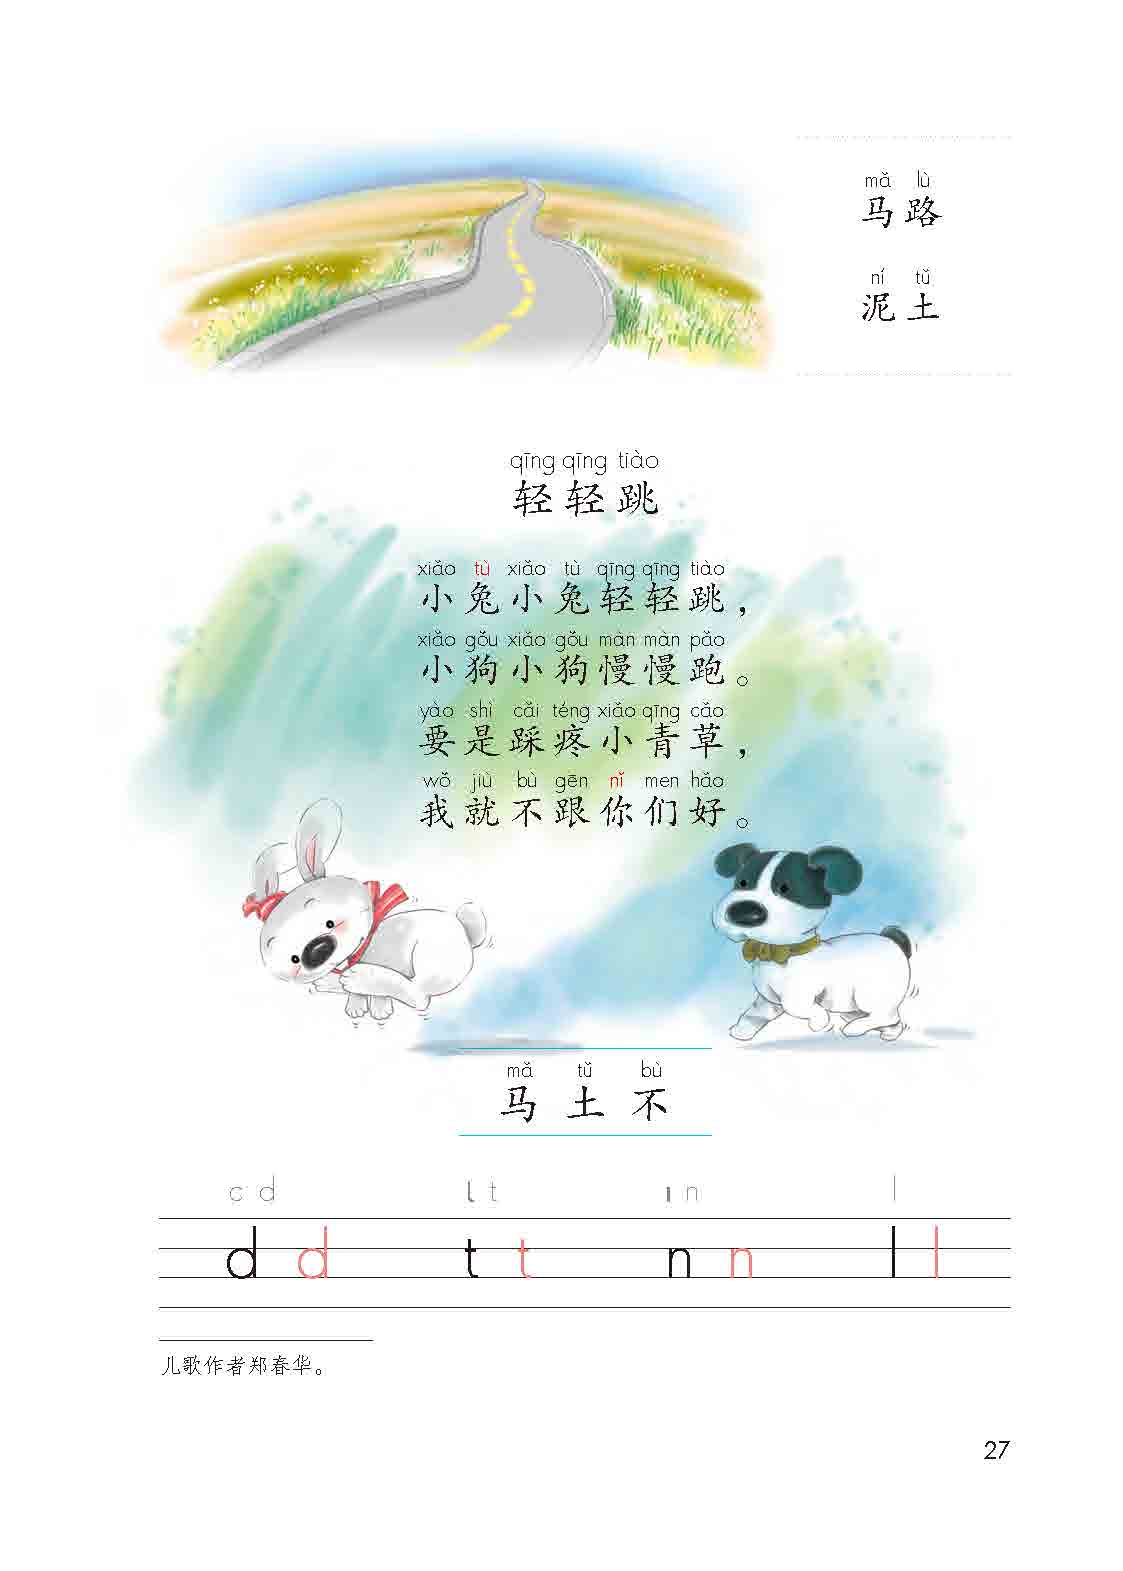 汉语拼音第4课:d t n l汉语拼音第3课:b p m f汉语拼音第2课:i u ü y